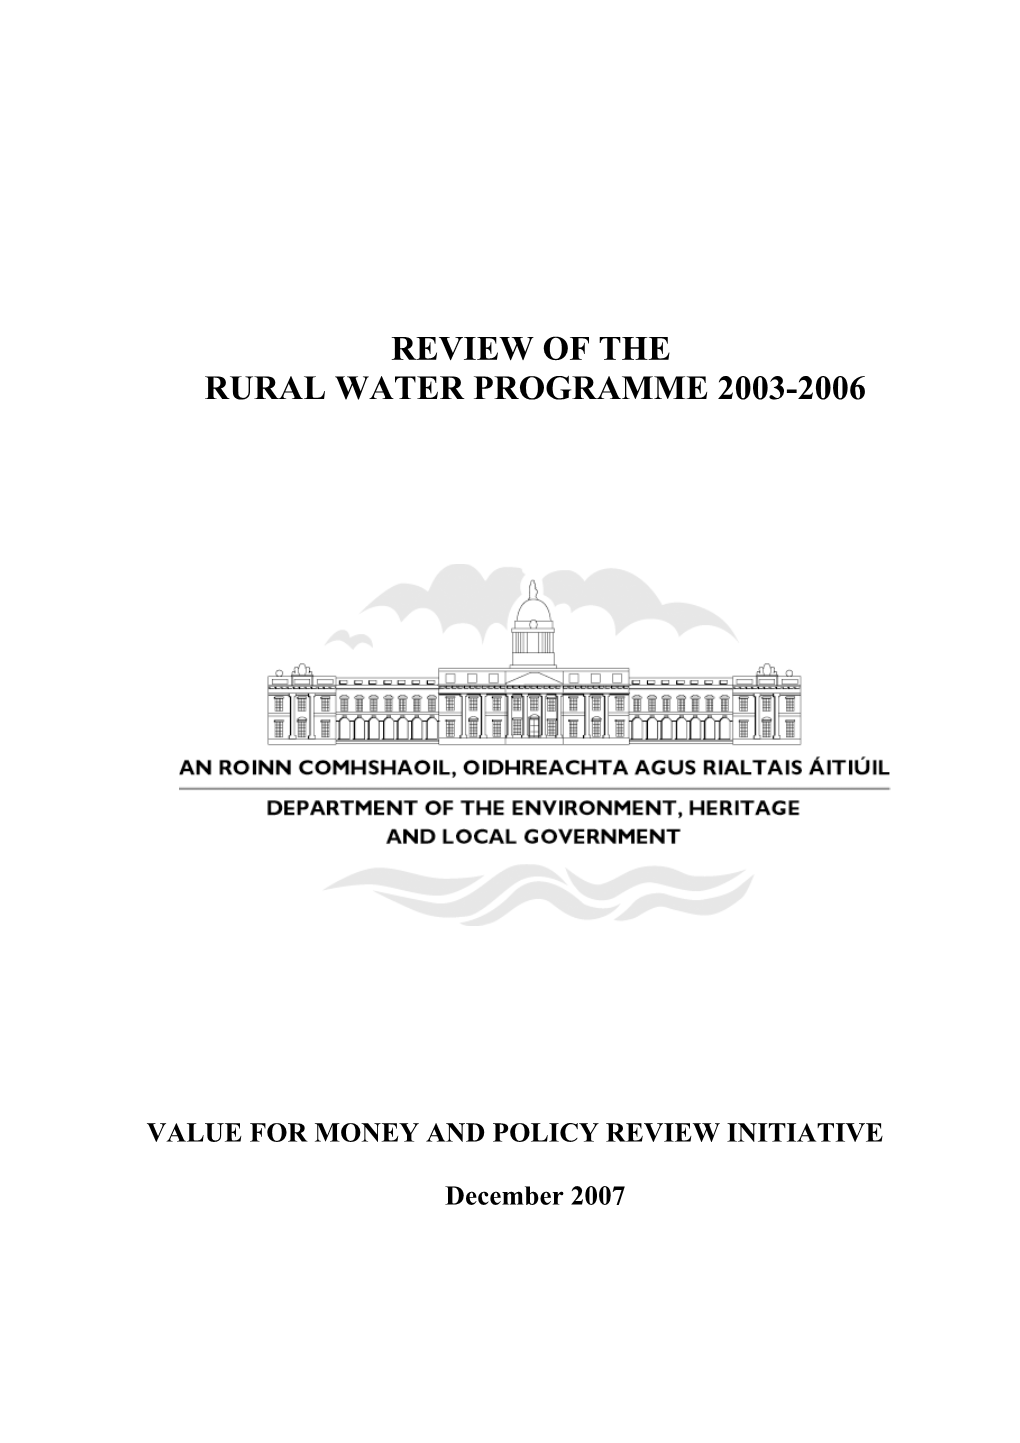 Rural Water Review 2007